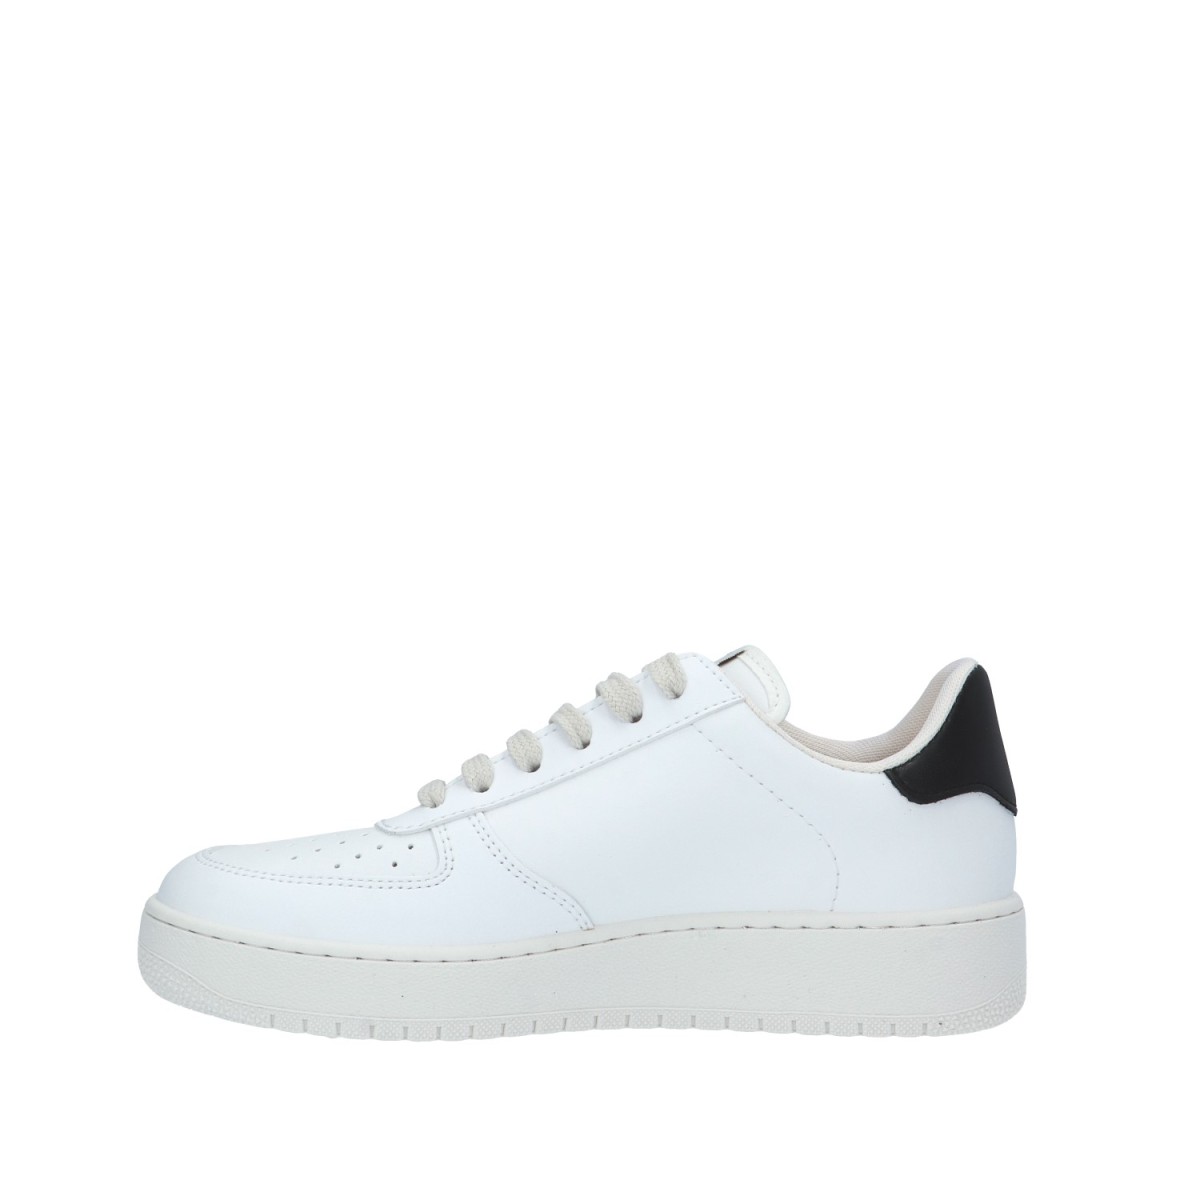 Victoria Sneaker Bianco/nero Gomma 1258201